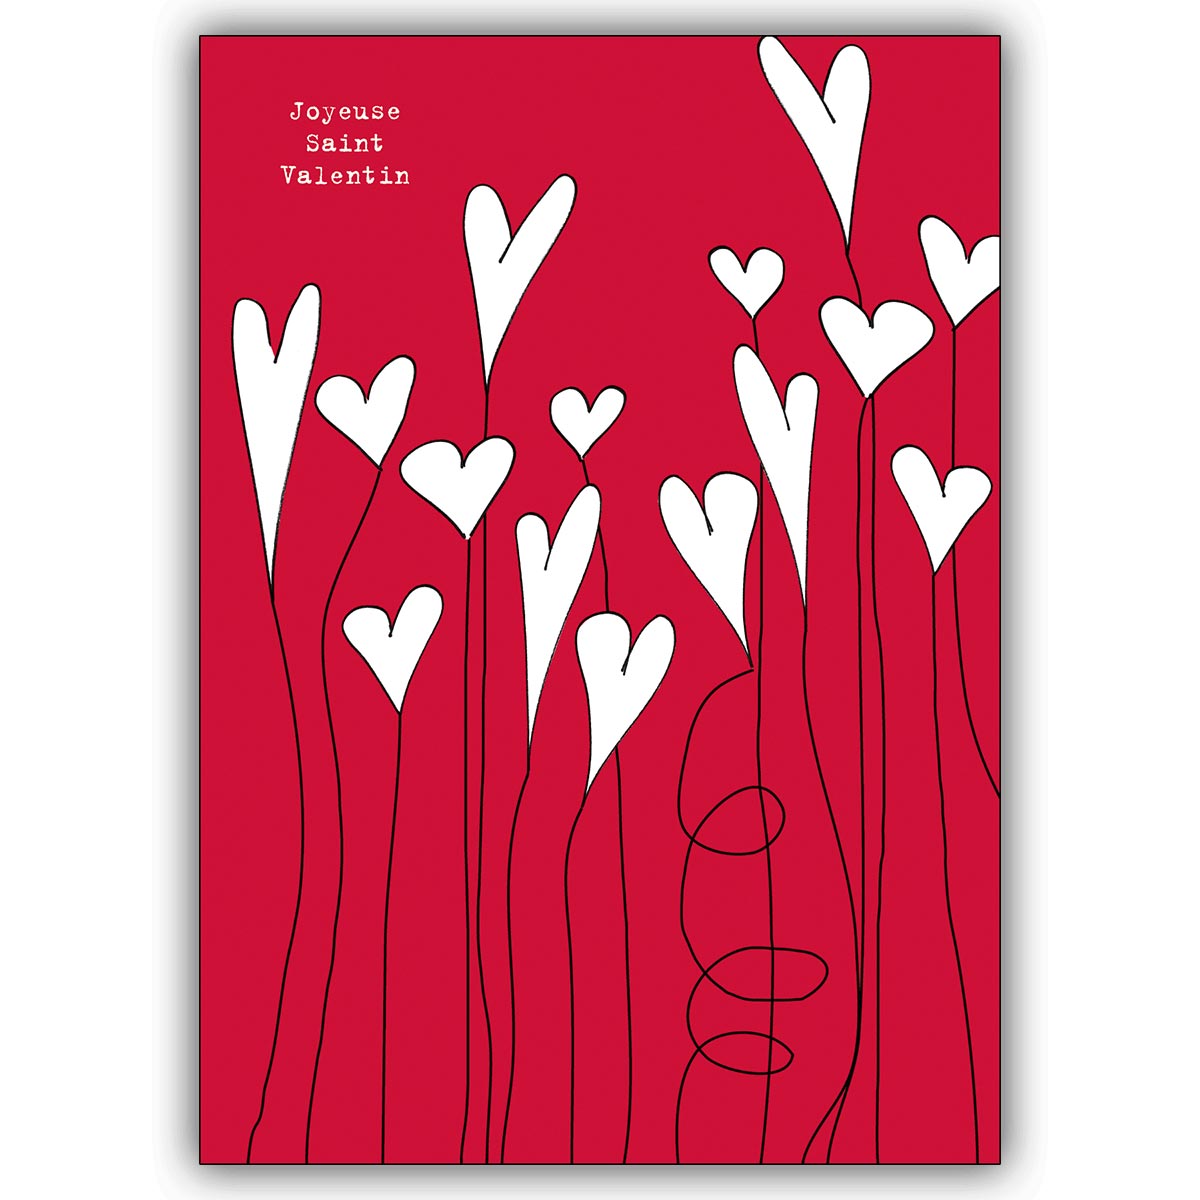 Romantische Liebeskarte mit weißen Herzen: Joyeuse Saint Valentin!